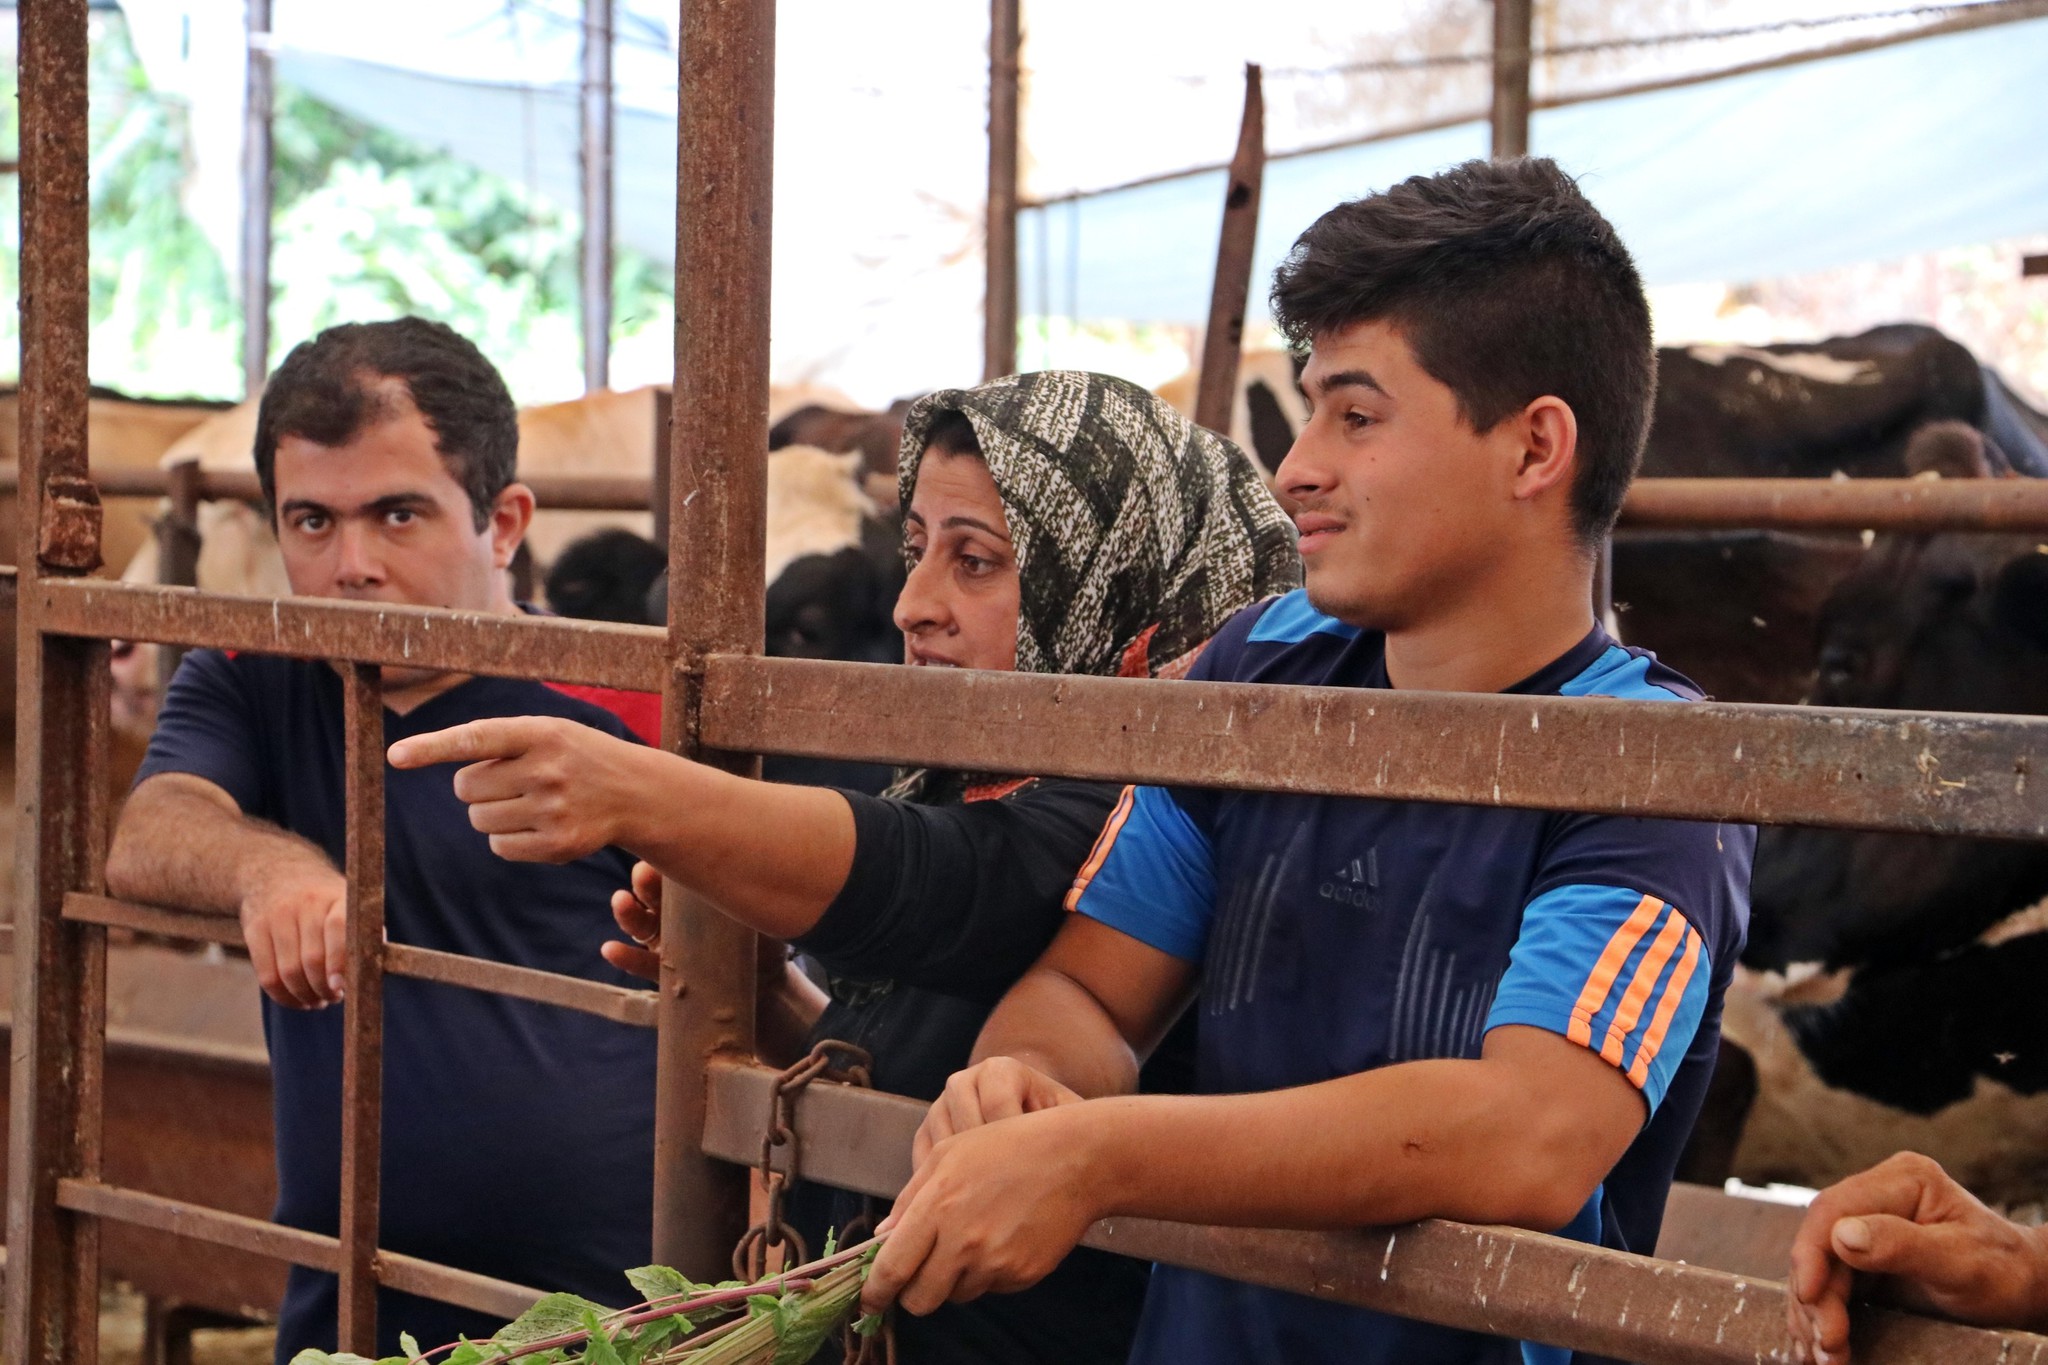 Antalya’da 4 bilezikle hayvancılık işine girdi, kurban siparişine yetişemiyor